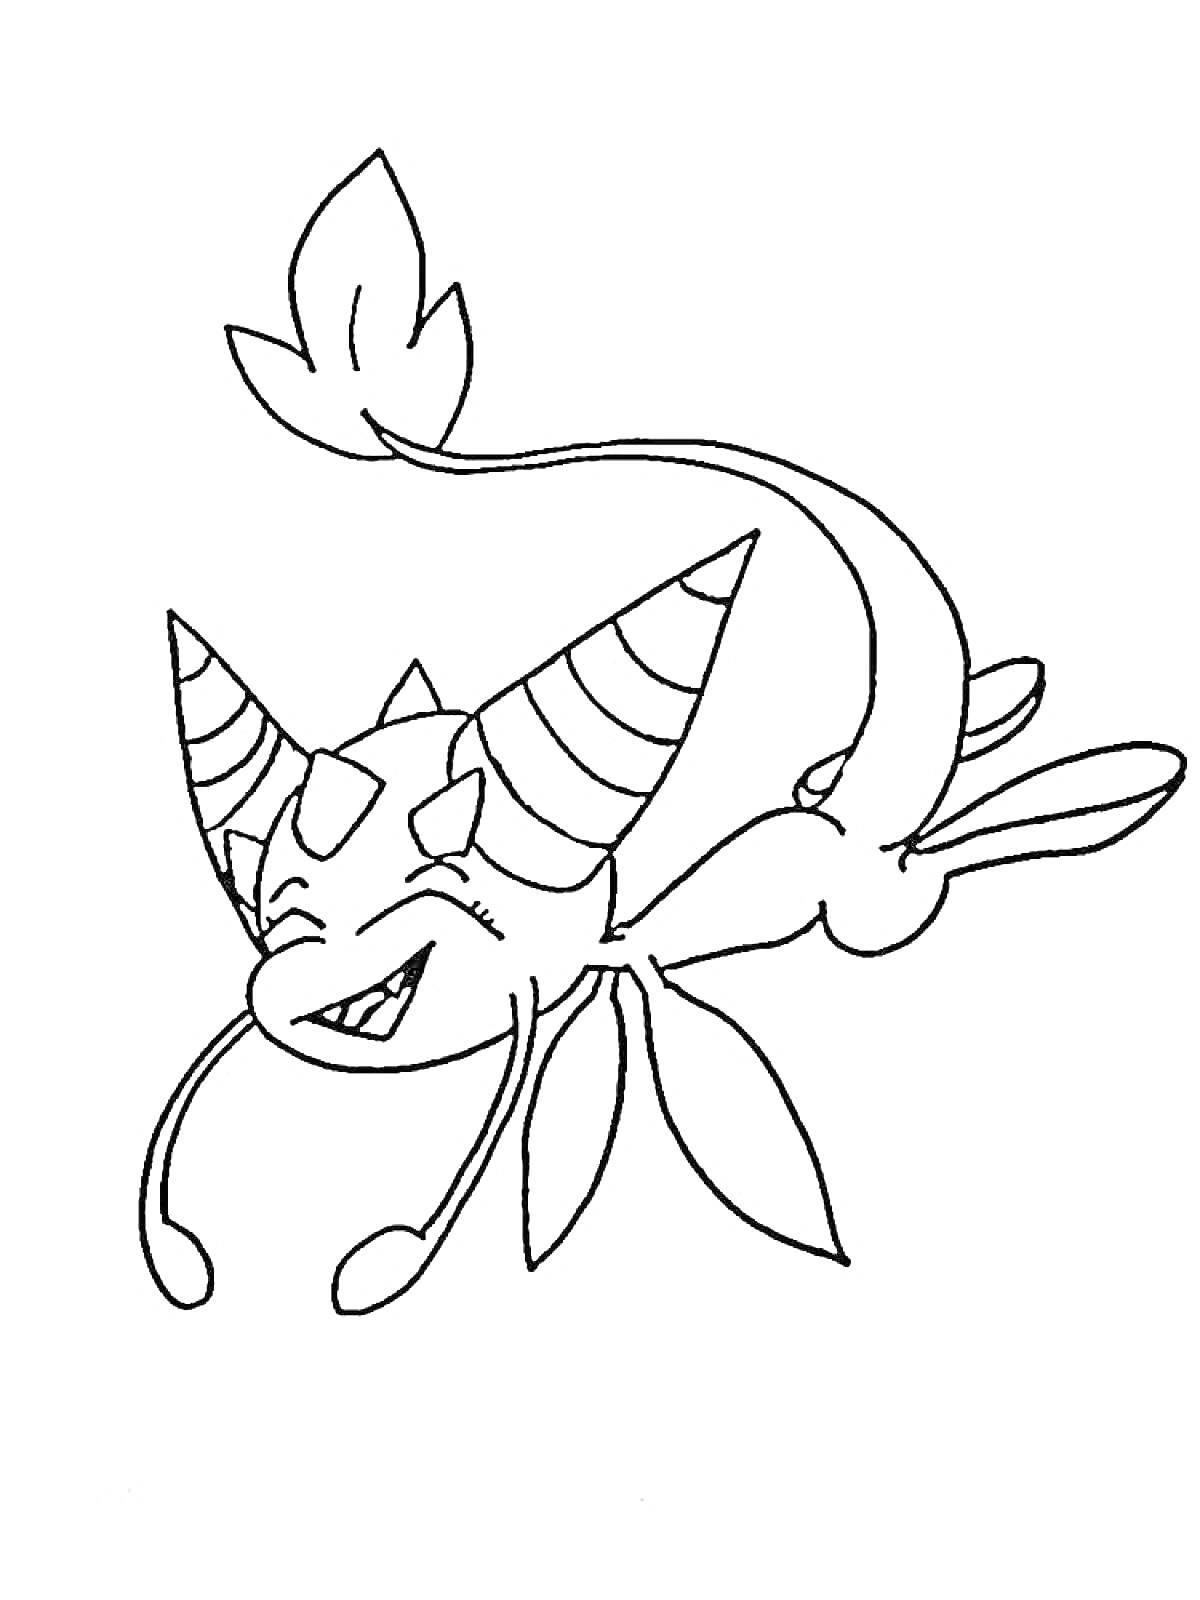 Раскраска Квами с ушами-шикулами, лапами и хвостом с листиком